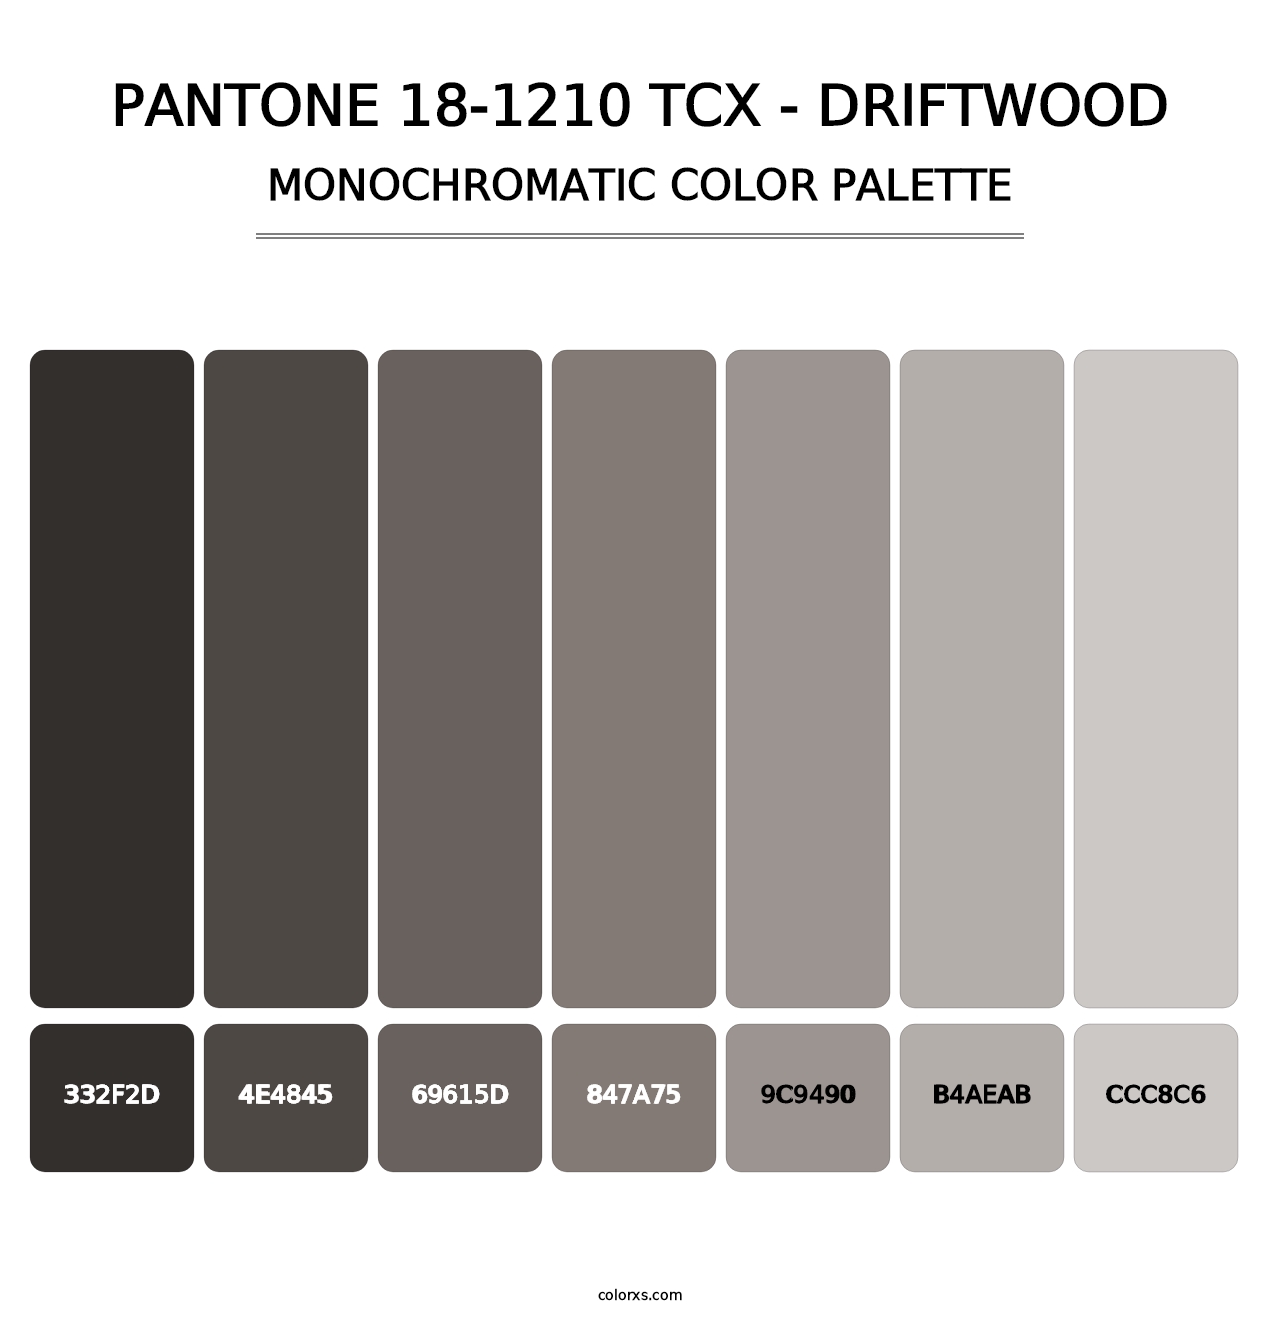 PANTONE 18-1210 TCX - Driftwood - Monochromatic Color Palette